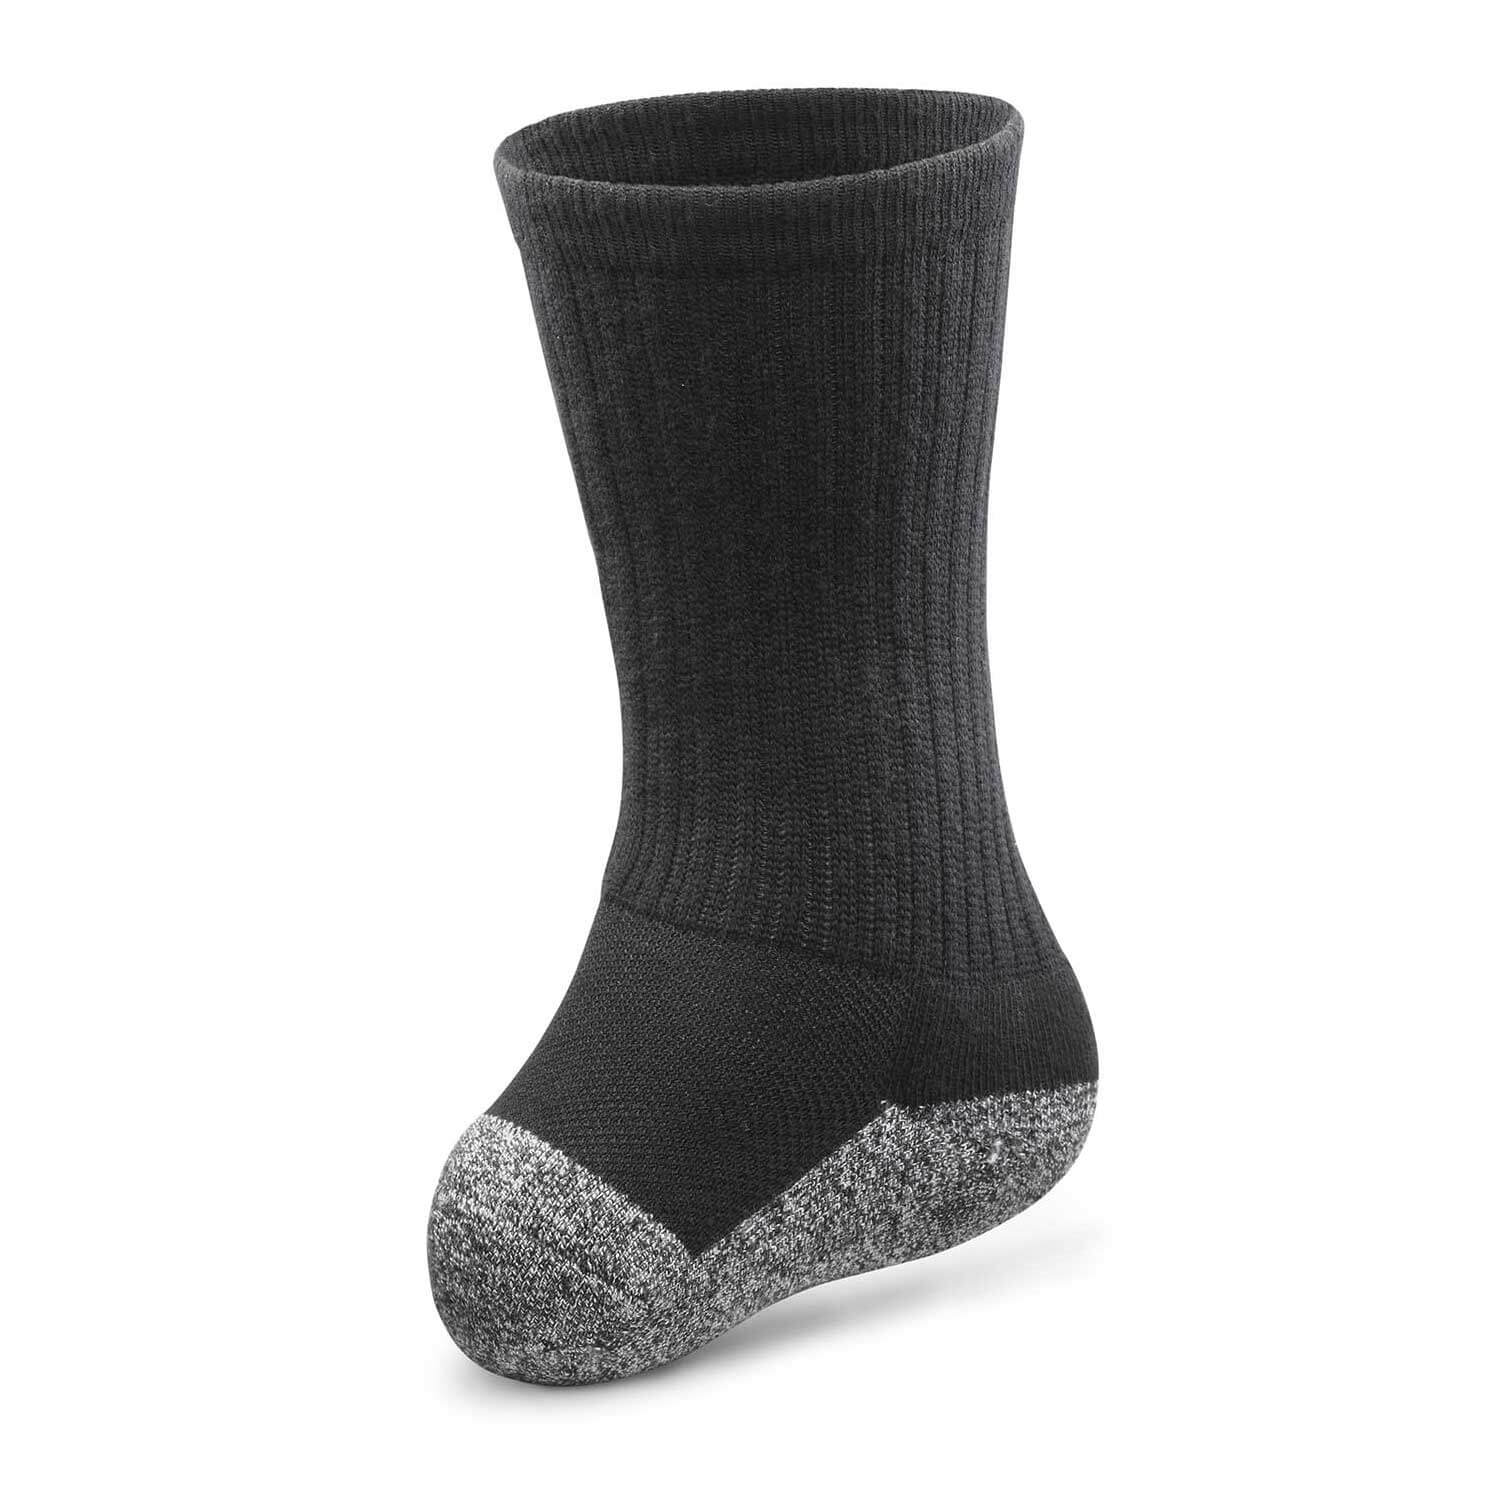 Dr. Comfort Transmet Socks (1 Pair) - Women's Therapeutic Diabetic Socks - Medical